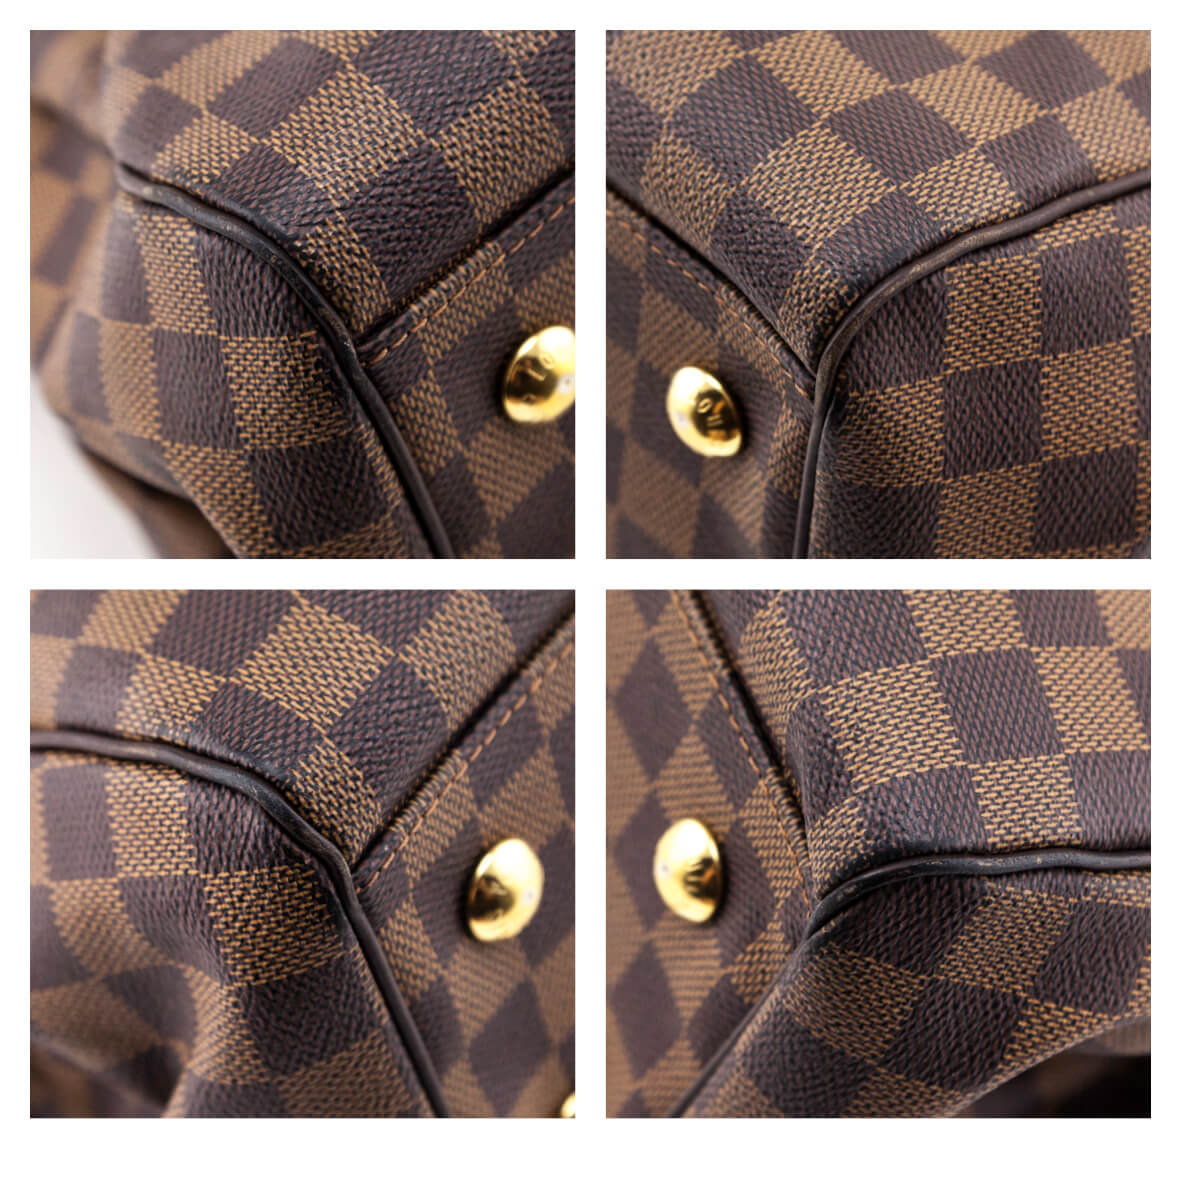 Louis Vuitton Authentic Trevi PM Damier Ebene With Strap Satchel Handbag  TH3018